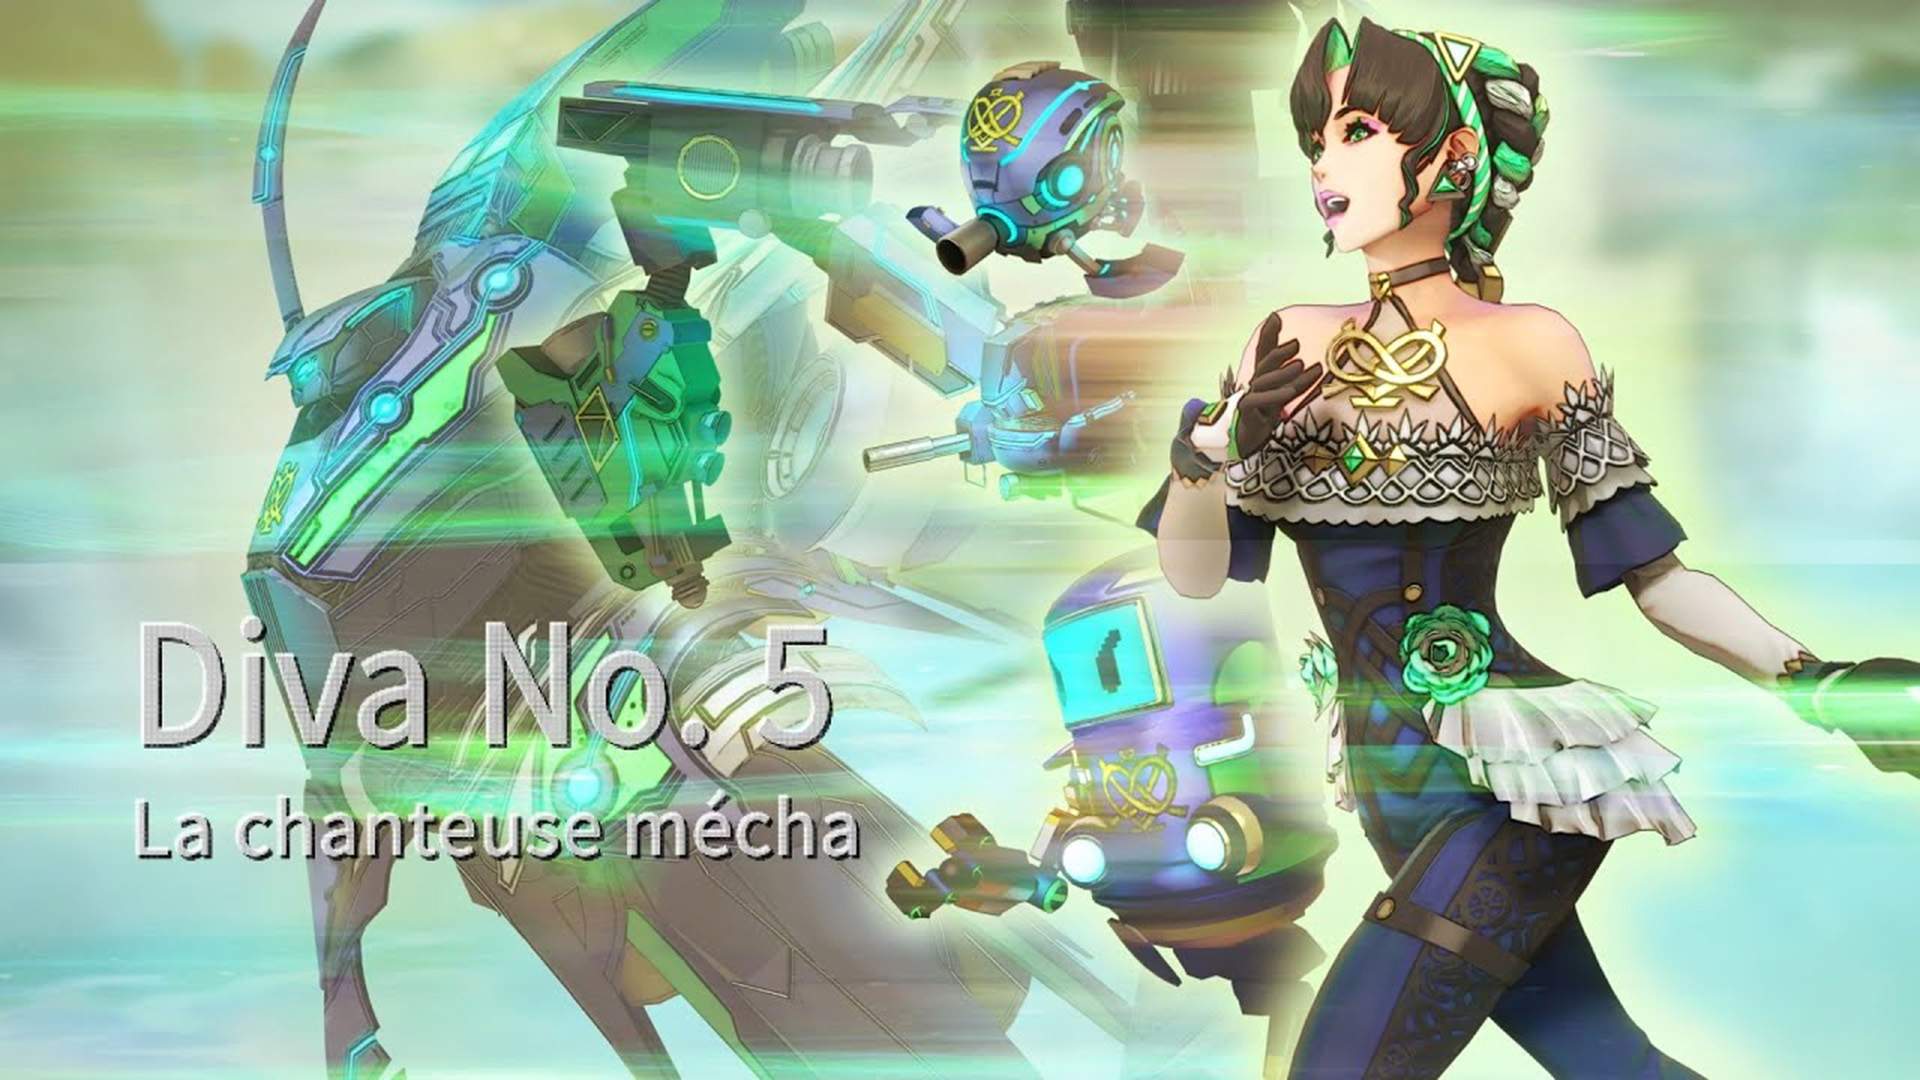 1 des personnages du jeu, Diva, sous ses formes humanoïde & robotique & texte « La chanteuse mécha »